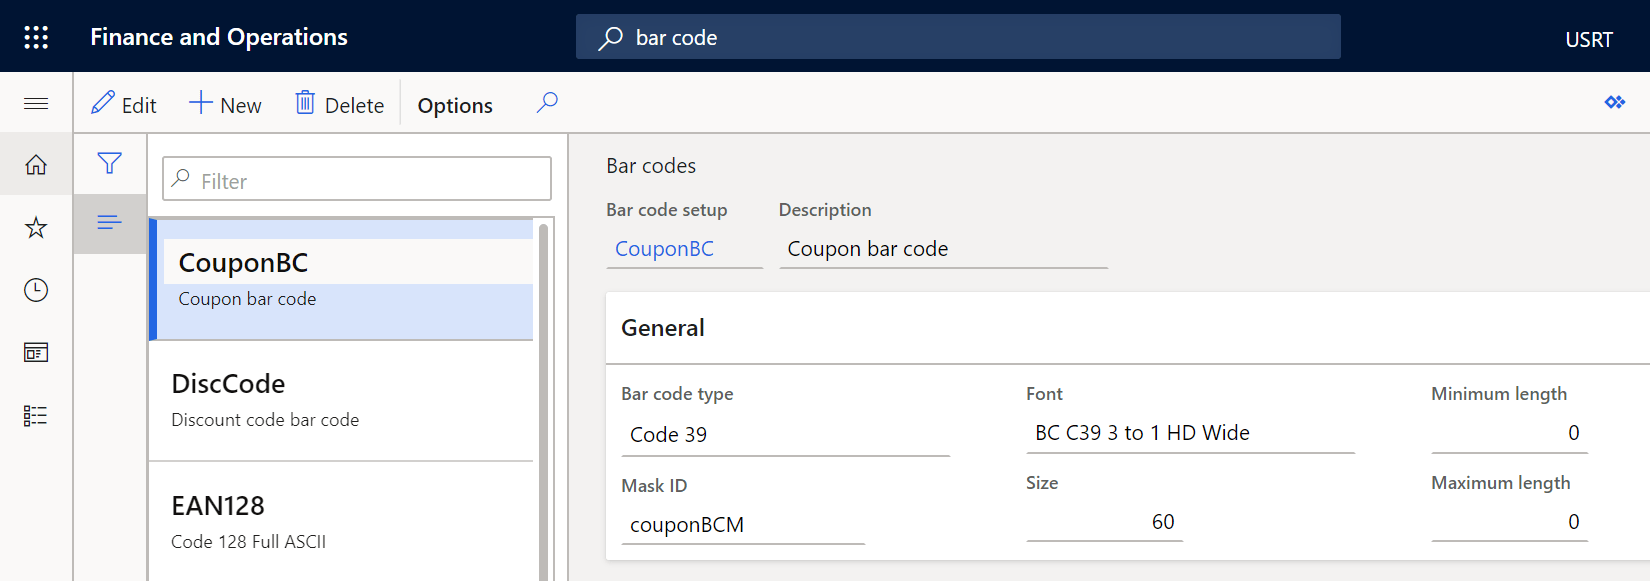 dynamics 365 bar code setup